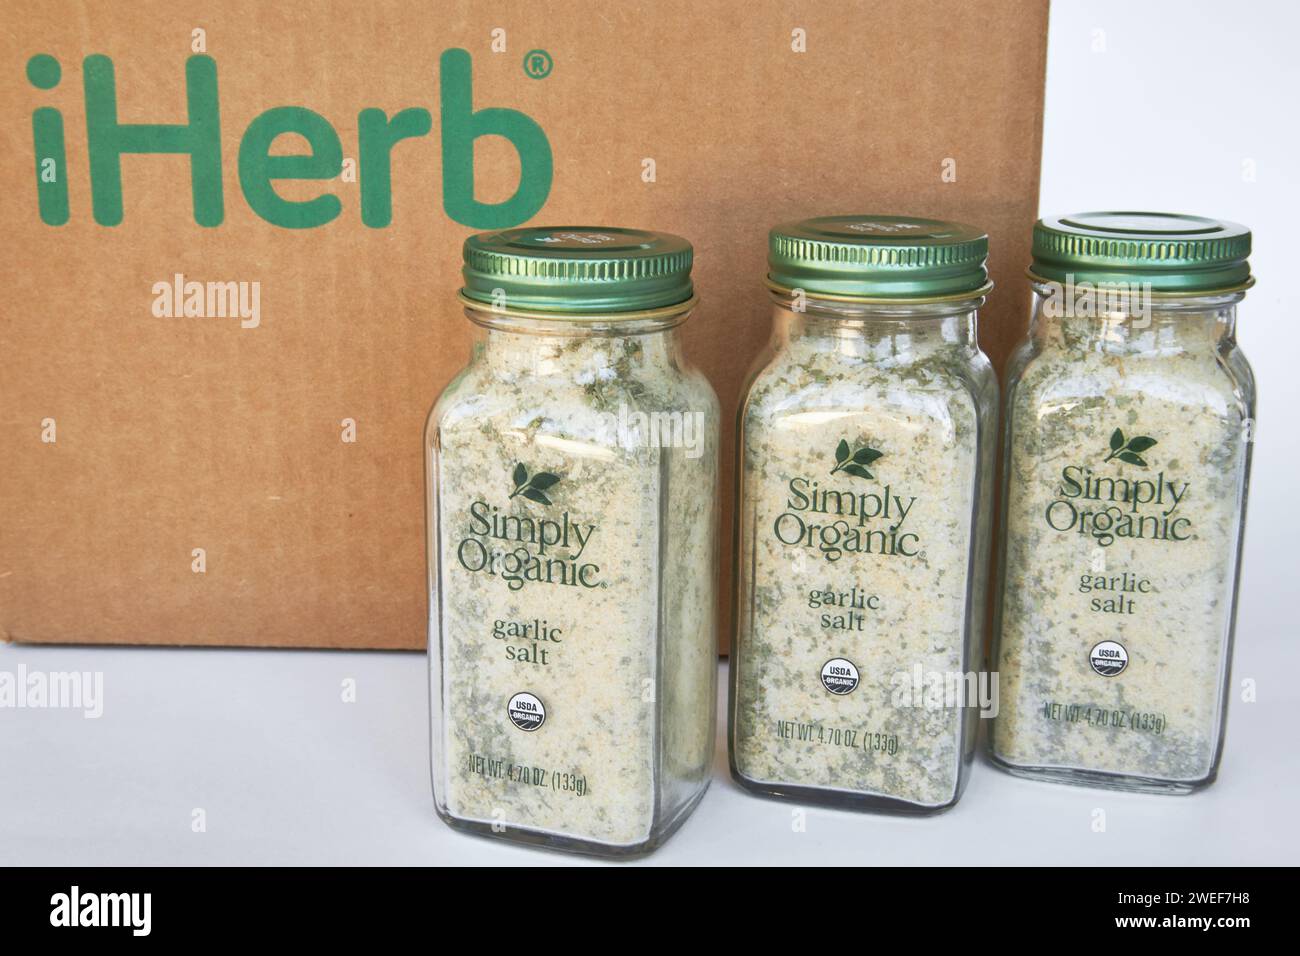 Trois pots de sel d'ail et d'herbes de marque Simply Organic, assaisonnement d'épices. Boîte en carton avec logo iHerb, achats en ligne. Acheter des produits dans un onli Banque D'Images